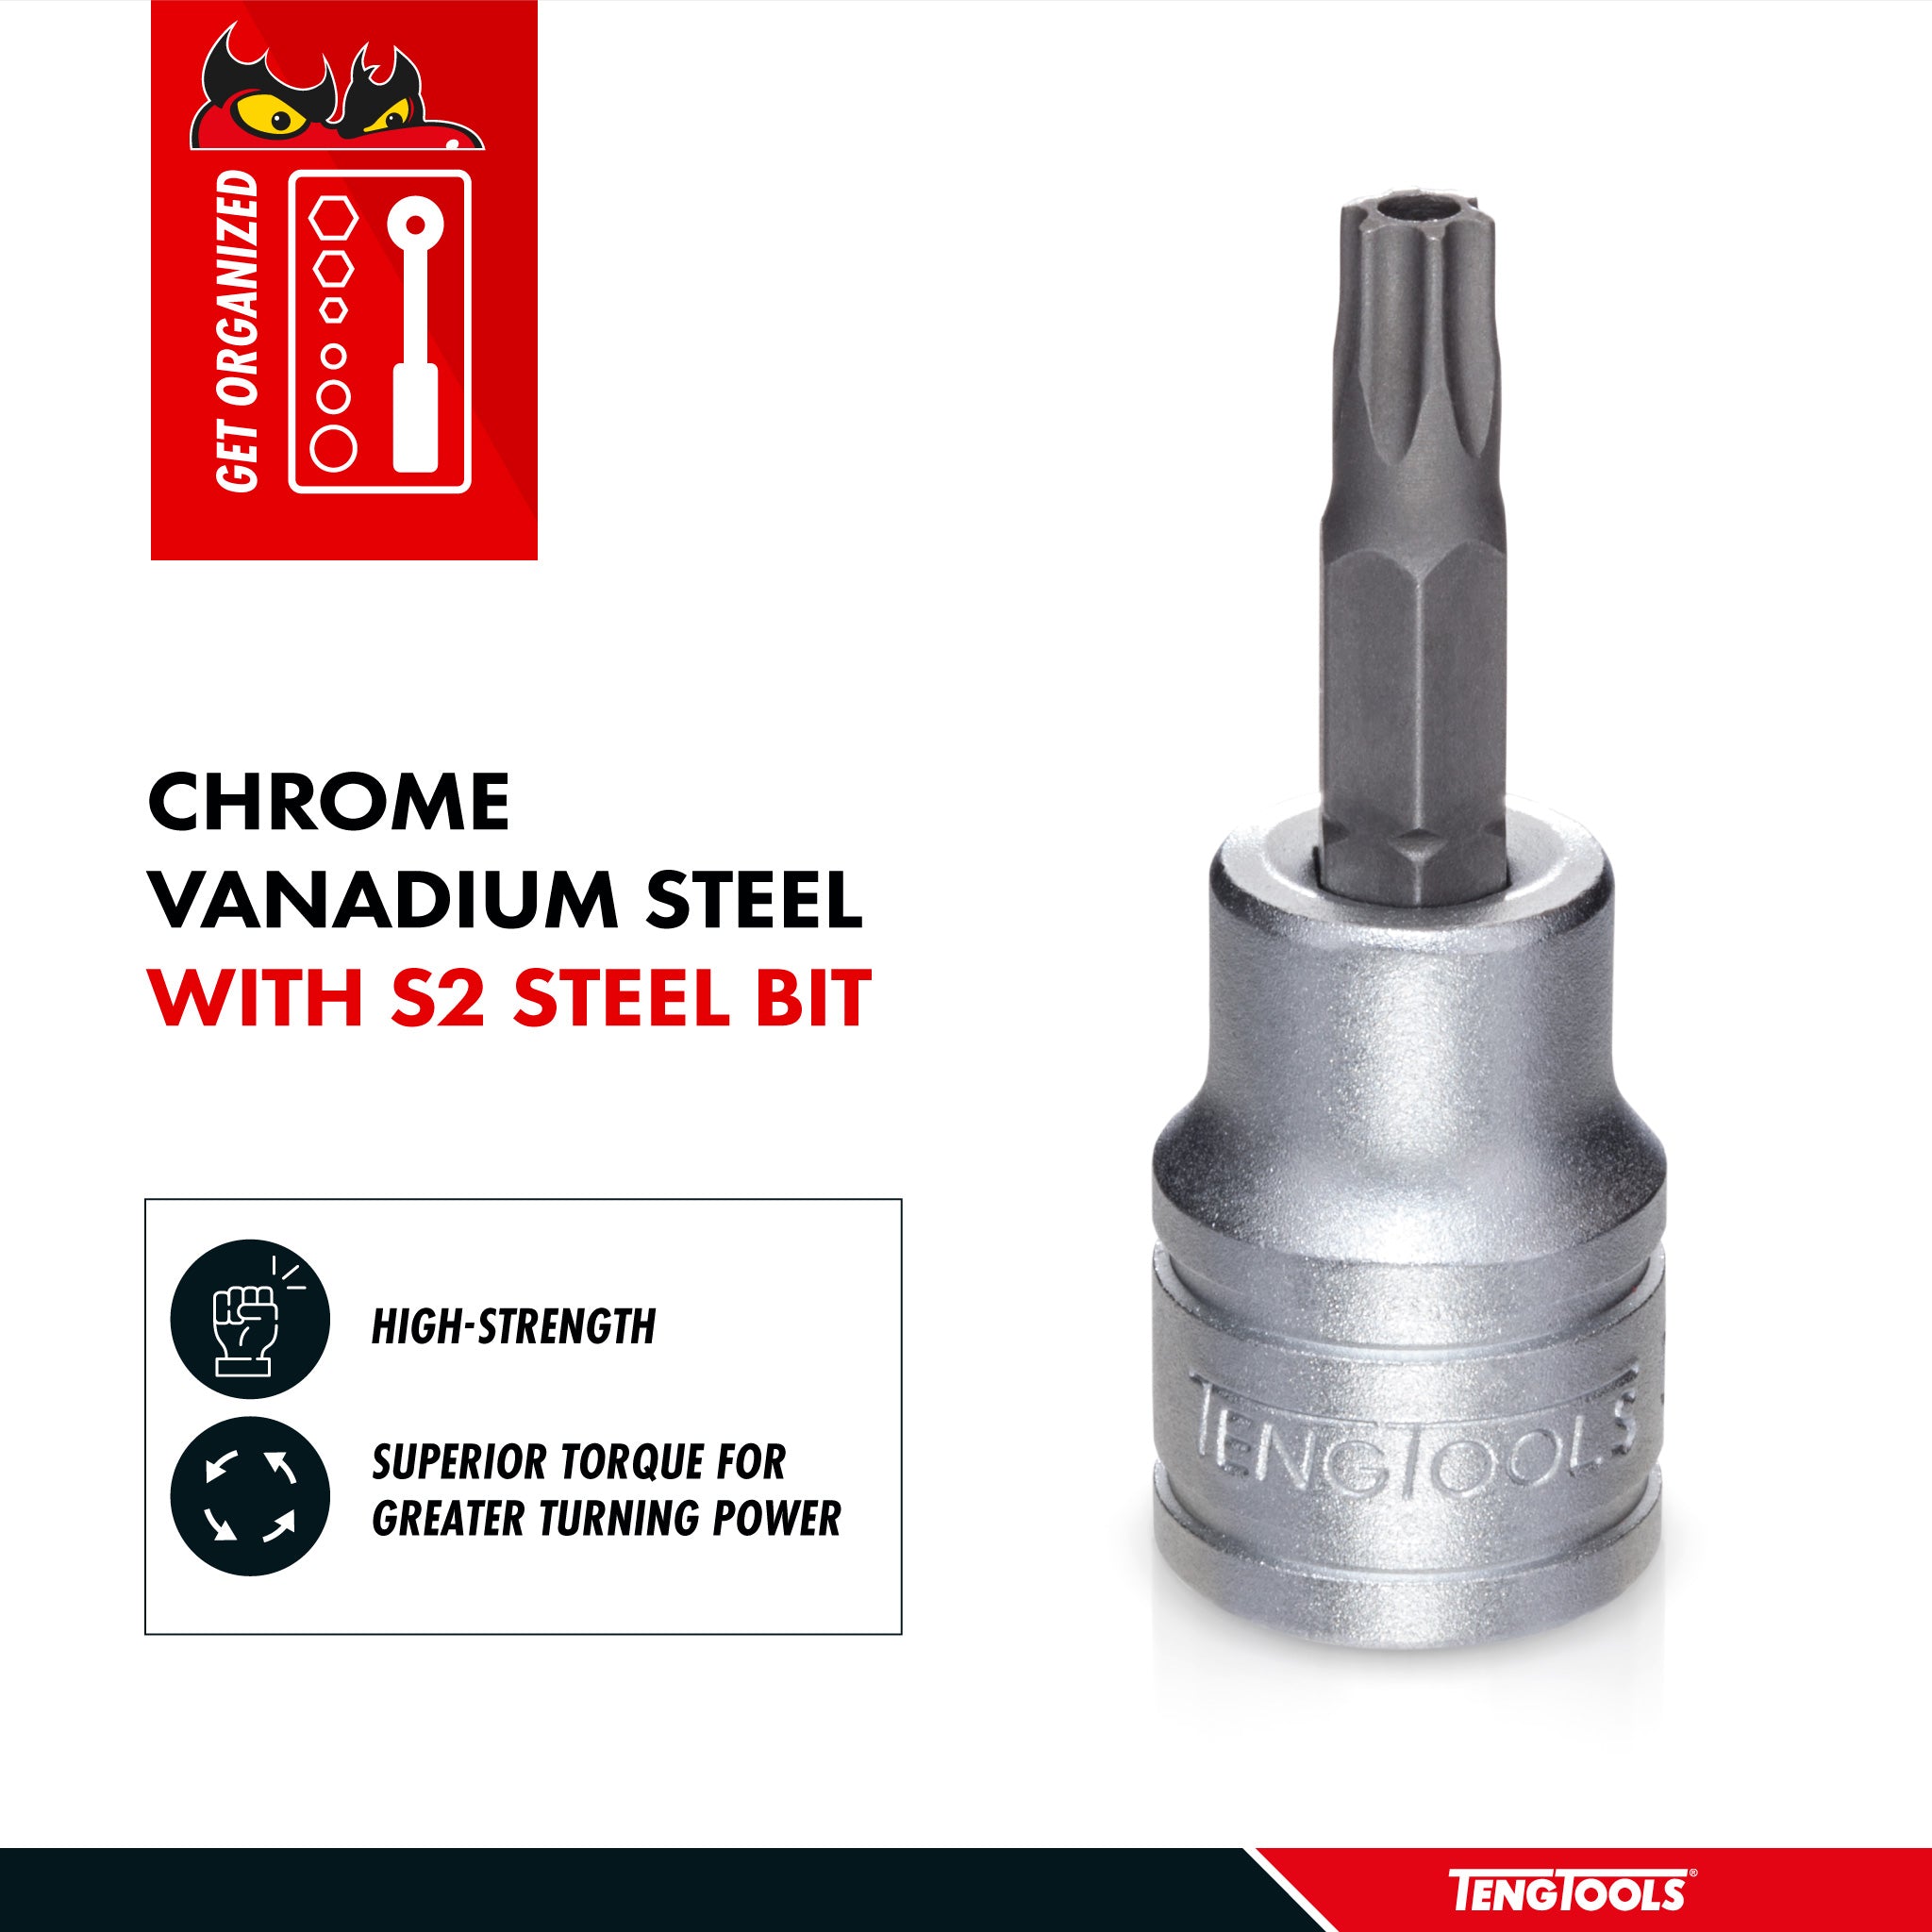 Teng Tools 3/8 Inch Drive Tamper Proof Torx TPX Chrome Vanadium Sockets